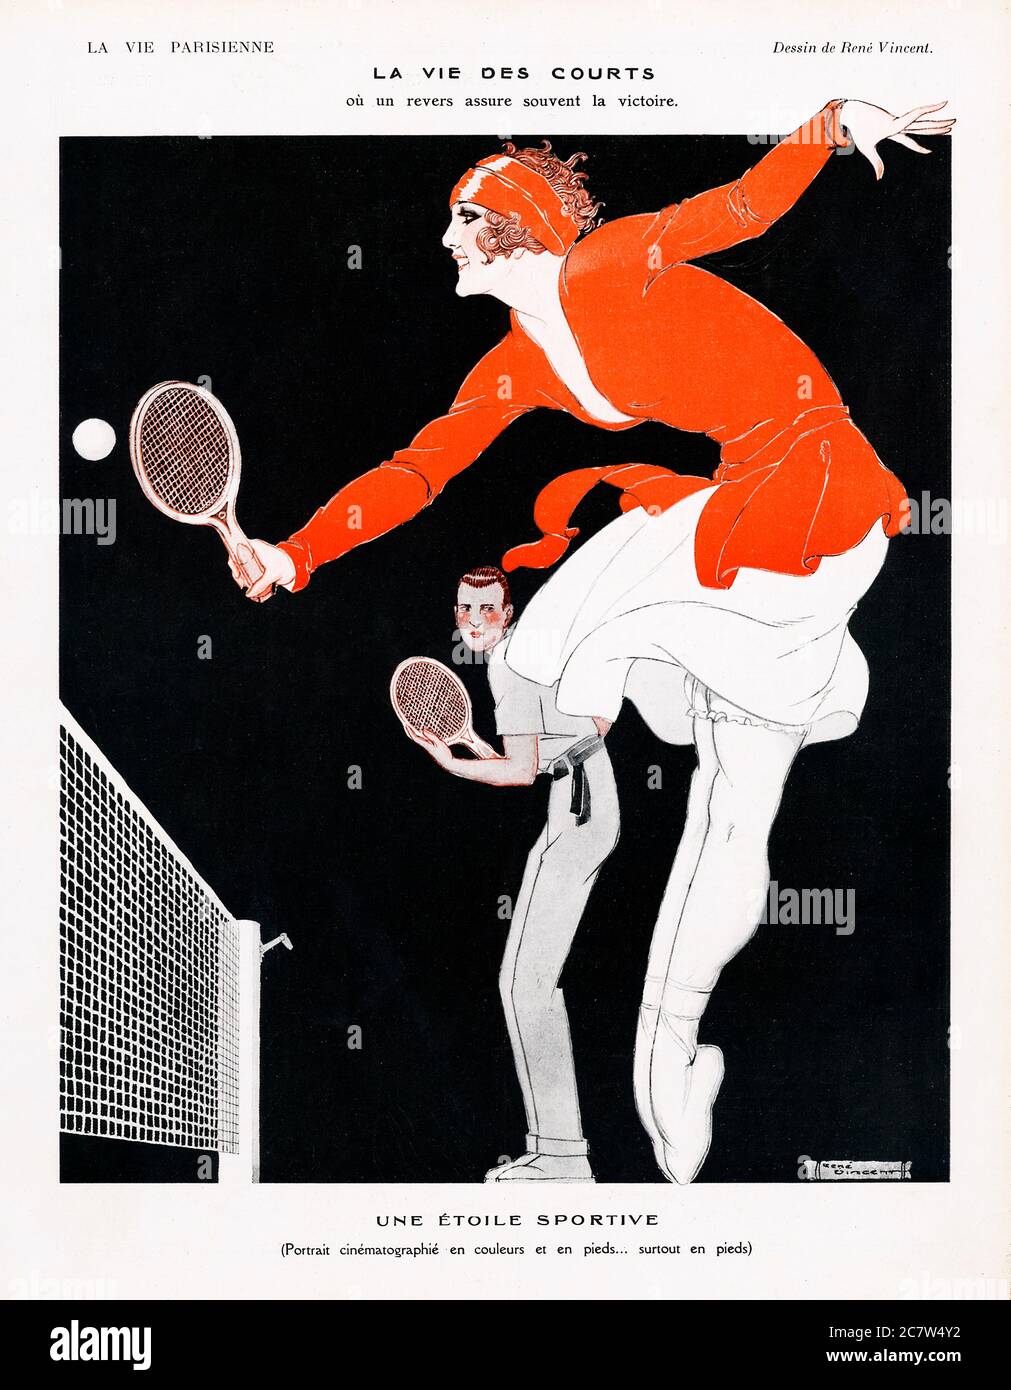 Tennis, La Vie des Courts, das Leben auf dem Platz mit einer gewinnenden Rückhand und ein filmisches Porträt eines Sportstars in Farbe und in den Füßen, en Point Stockfoto